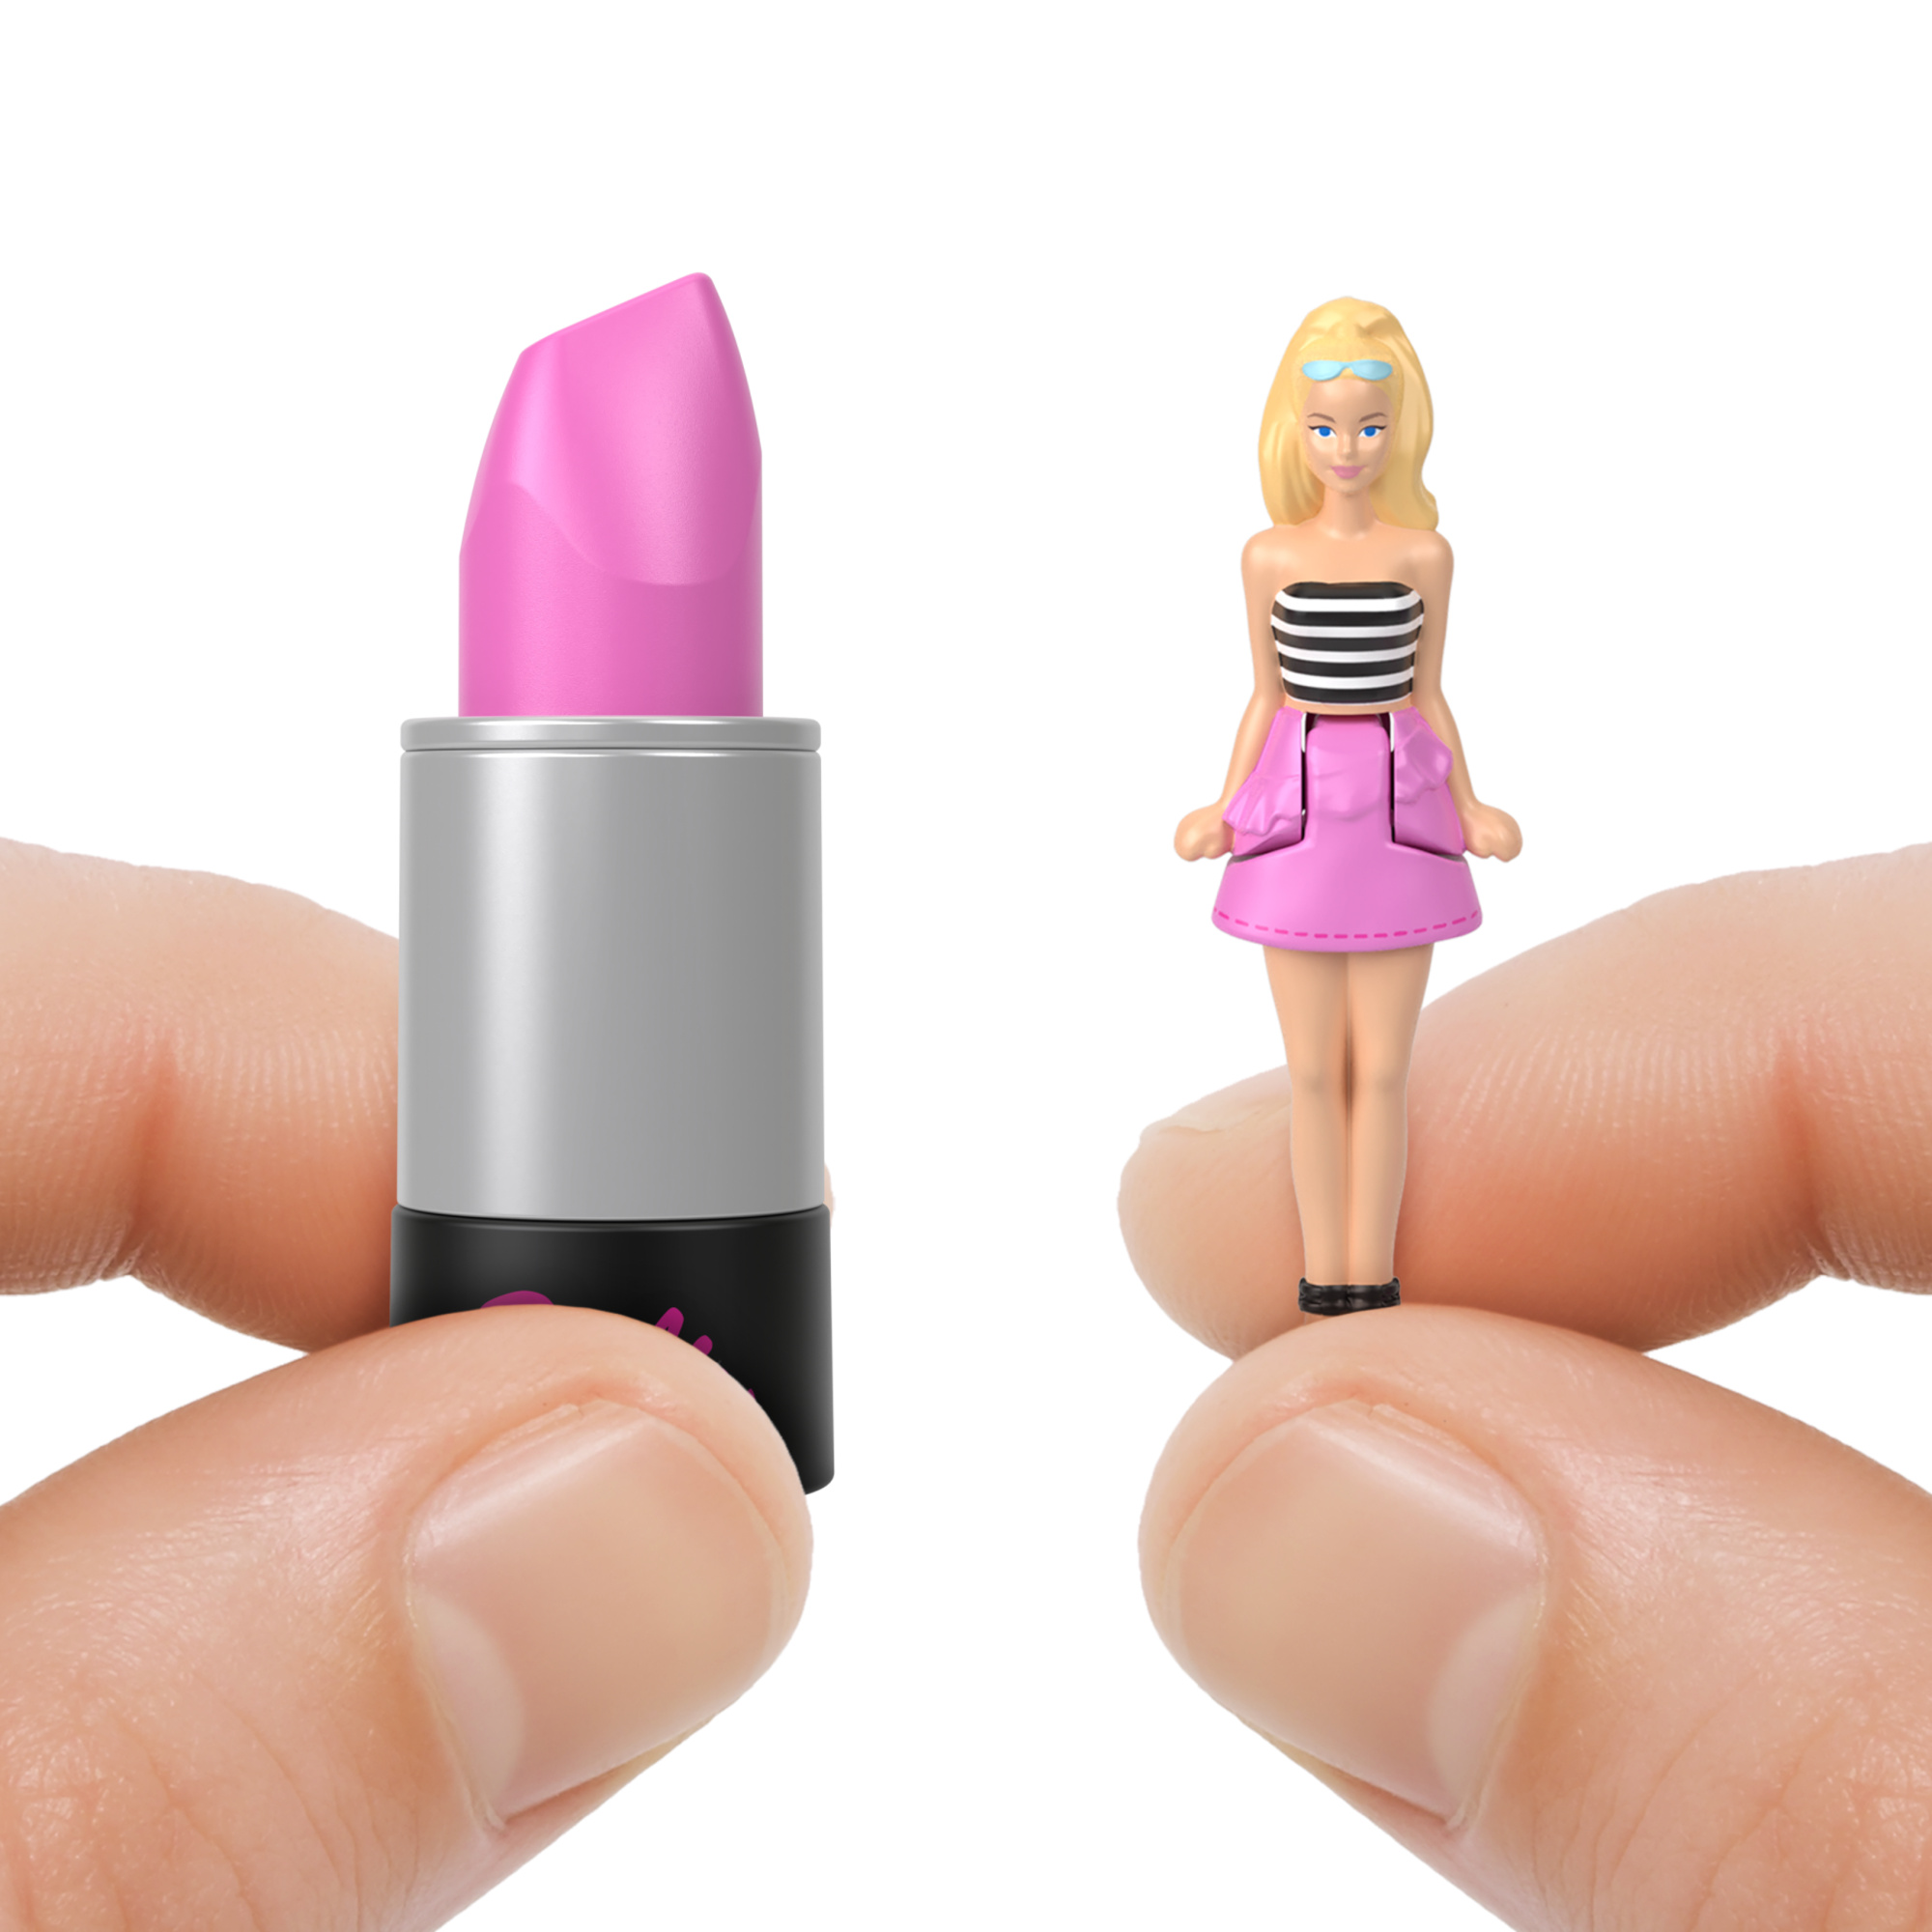 Mini barbieland - fashionistas - mini bambole in un tubetto di rossetto con sorpresa - Barbie